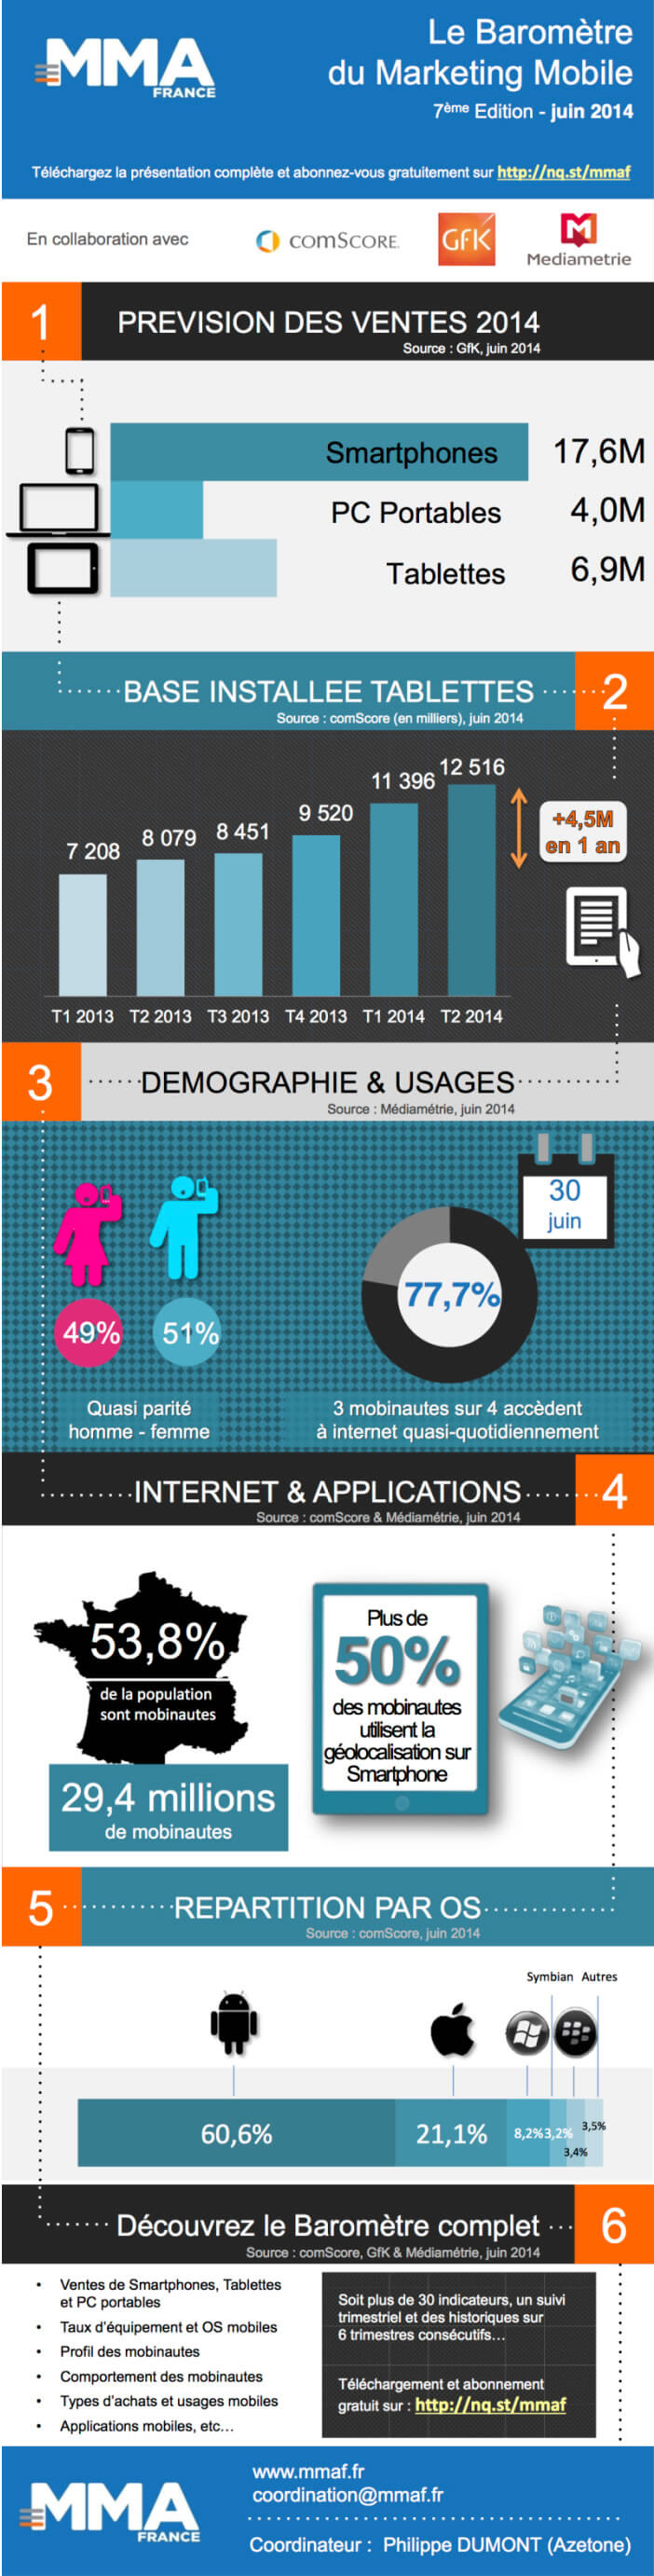 Infographie - Marketing Mobile en France